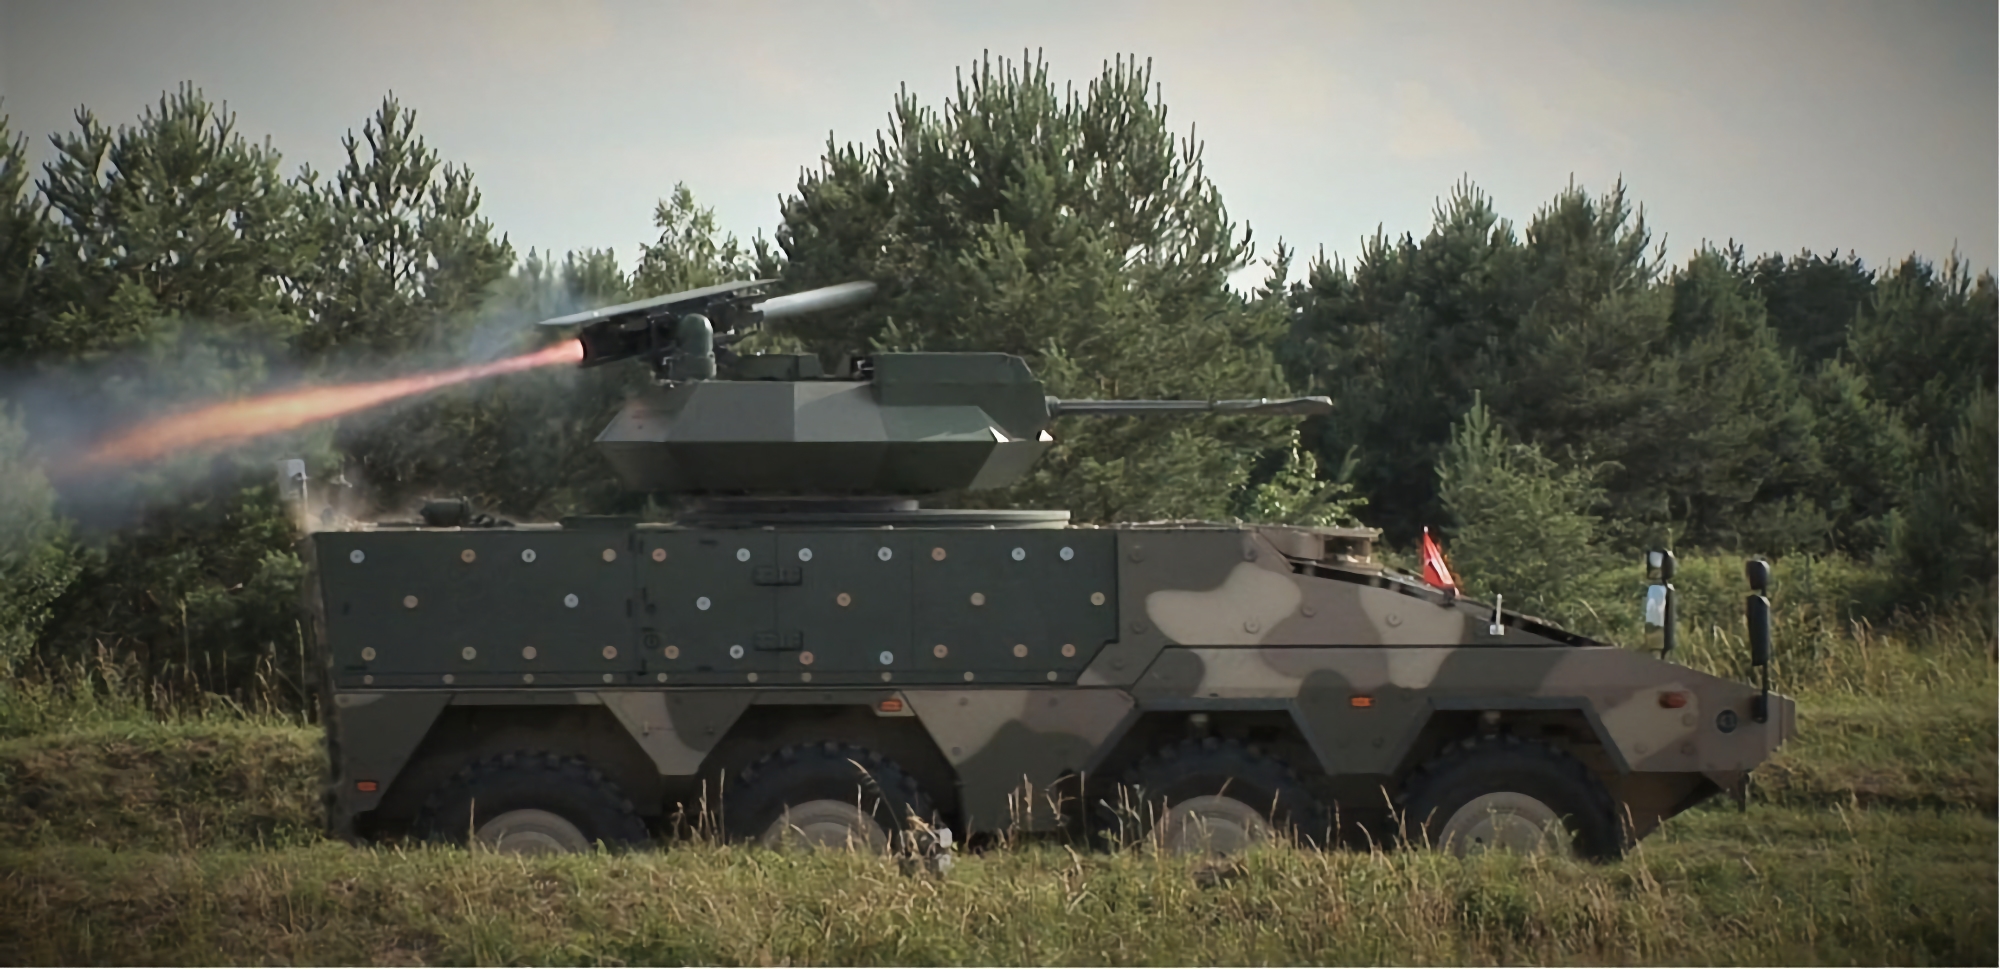 Kontrakt värt 50 miljoner USD: Australien köper Spike LR2 anti-tanksystem till Boxer CRV pansrade spaningsfordon